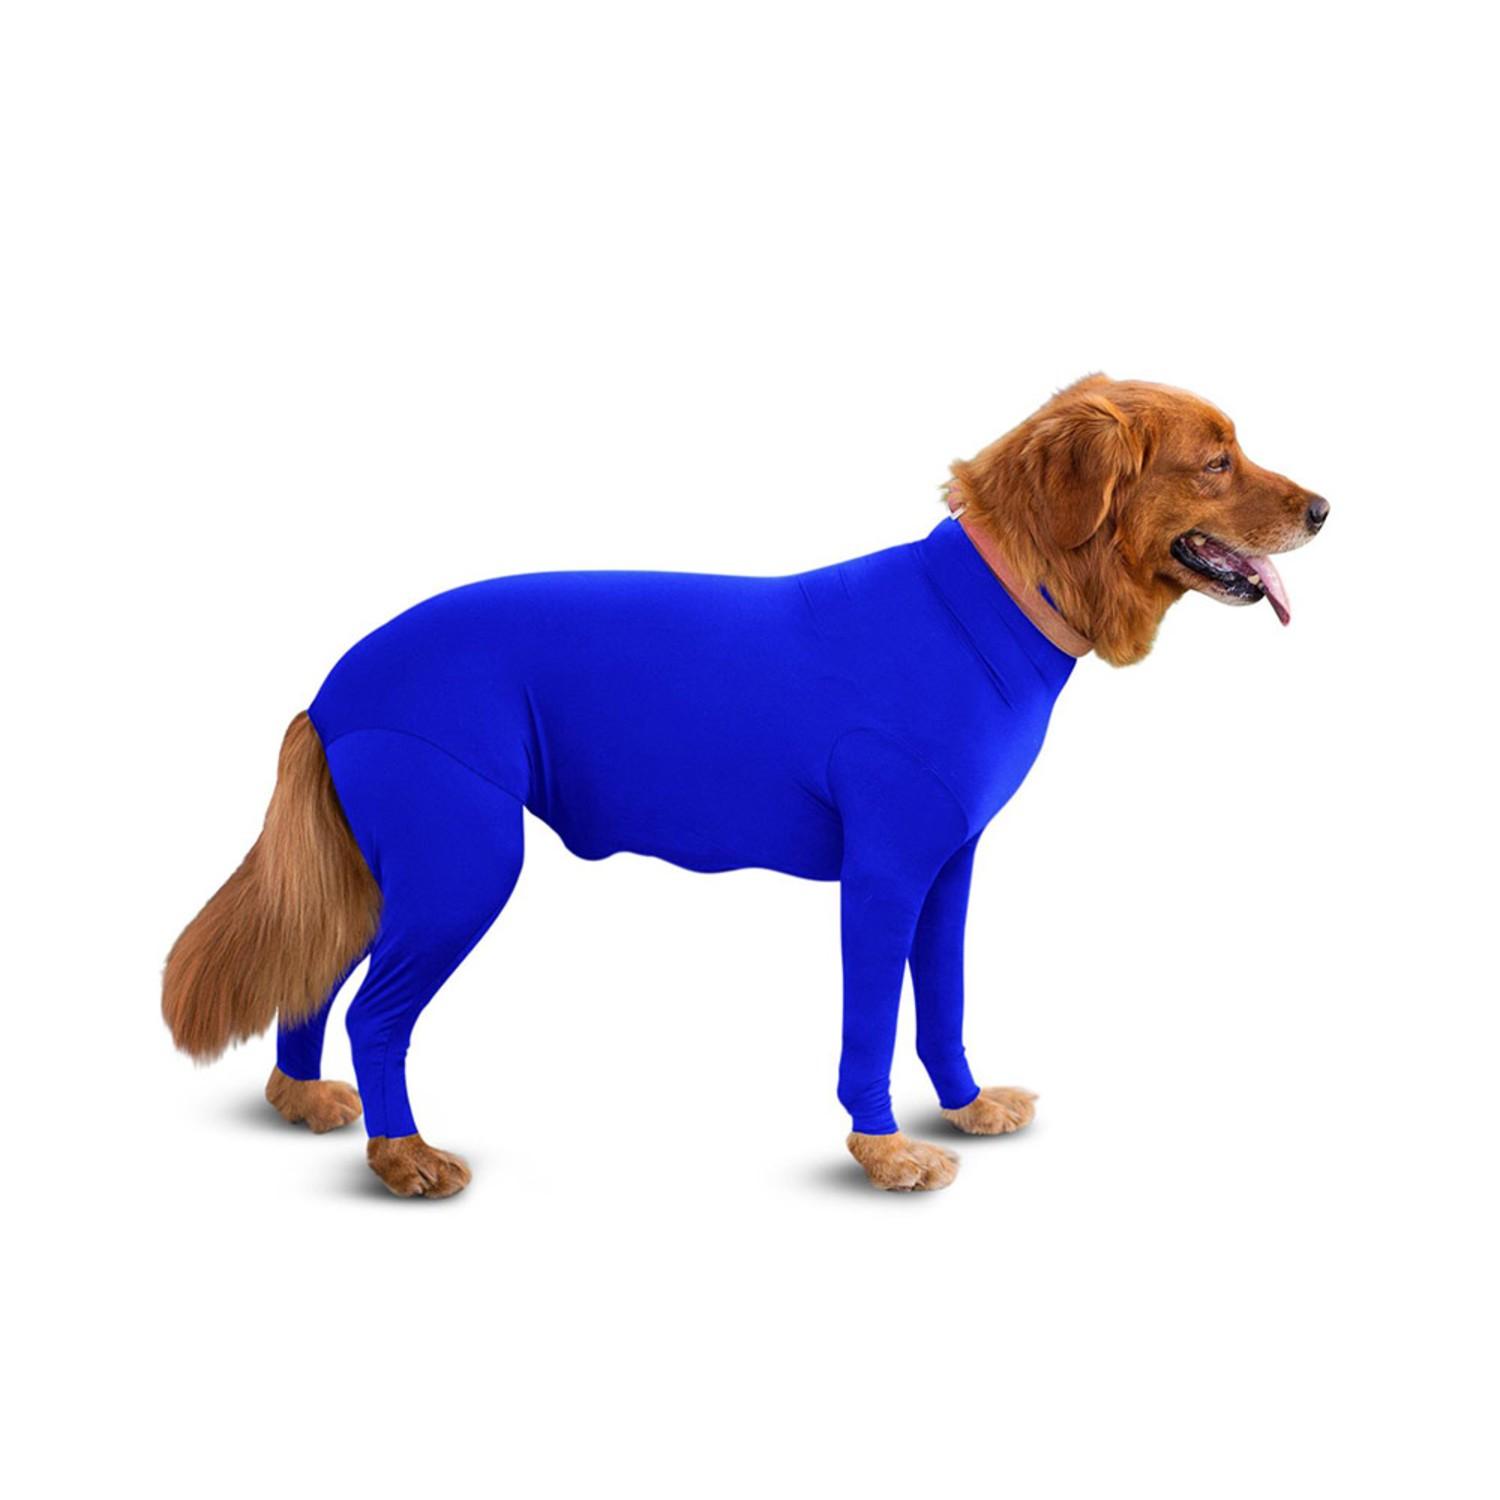 Shed Defender Original Full Body Dog Onesie - Royal Blue